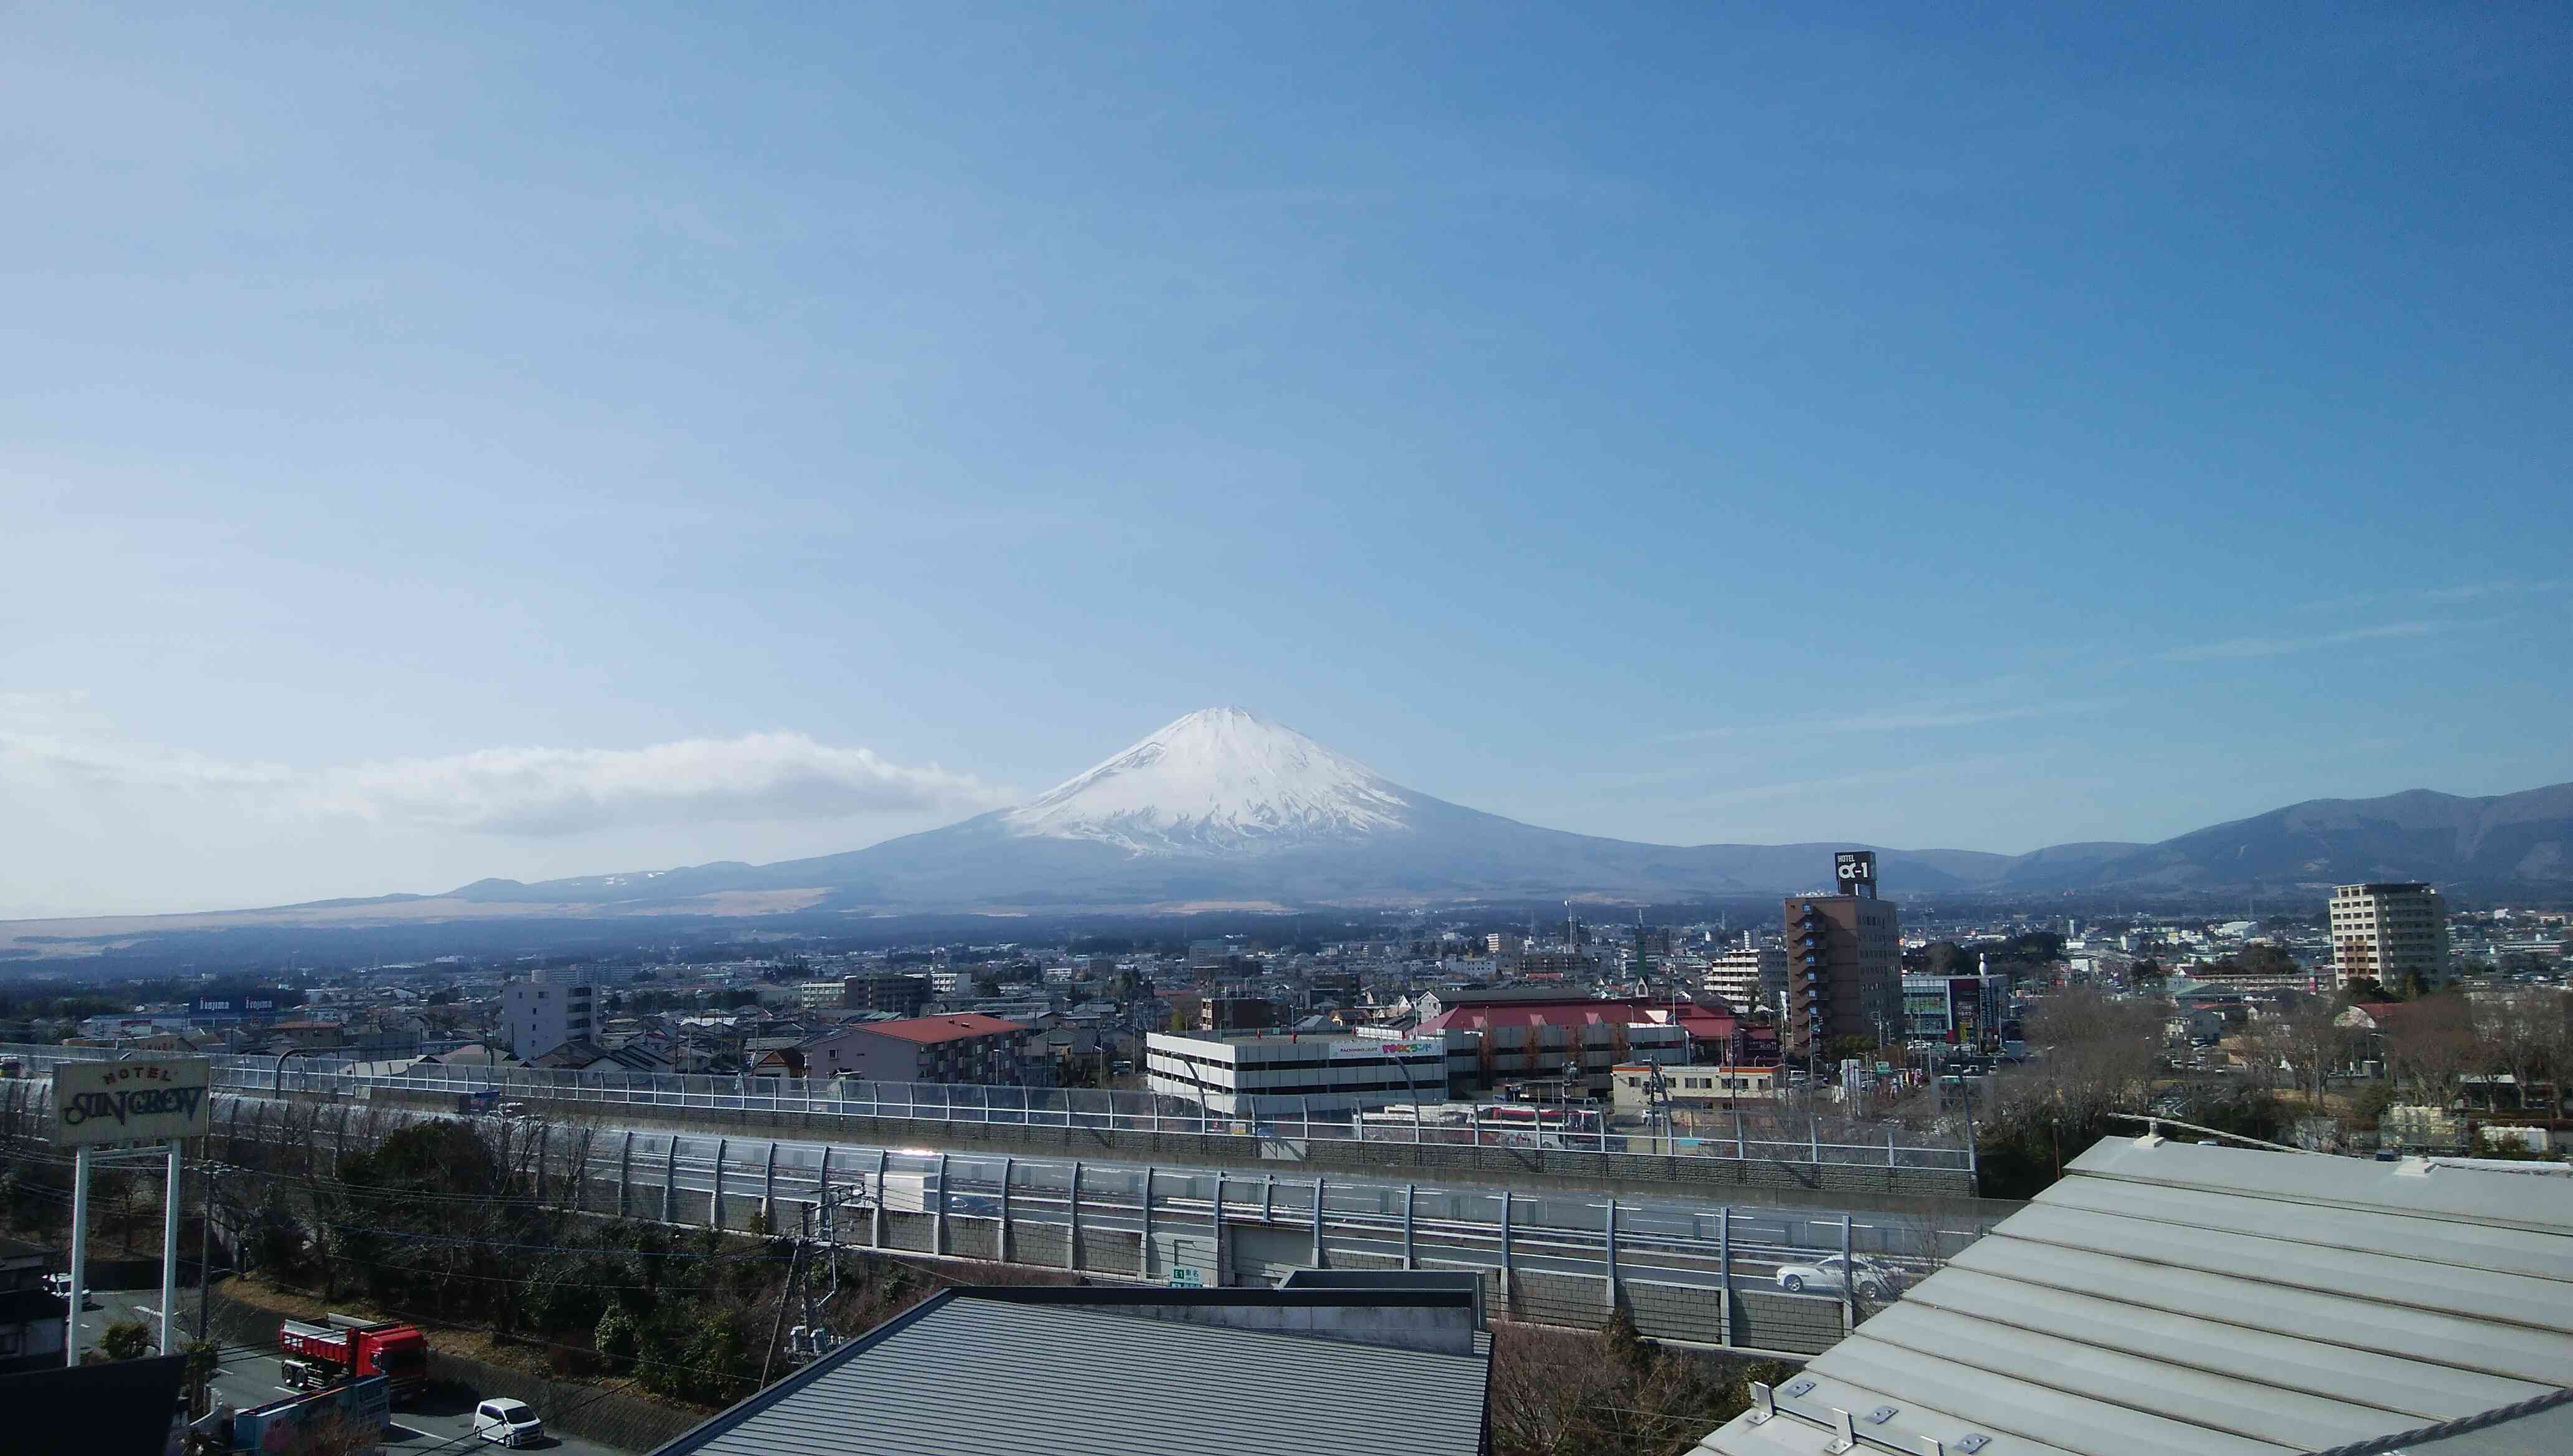 富士山があるまち・御殿場市。あまりの迫力にびっくりすると思いますよ。